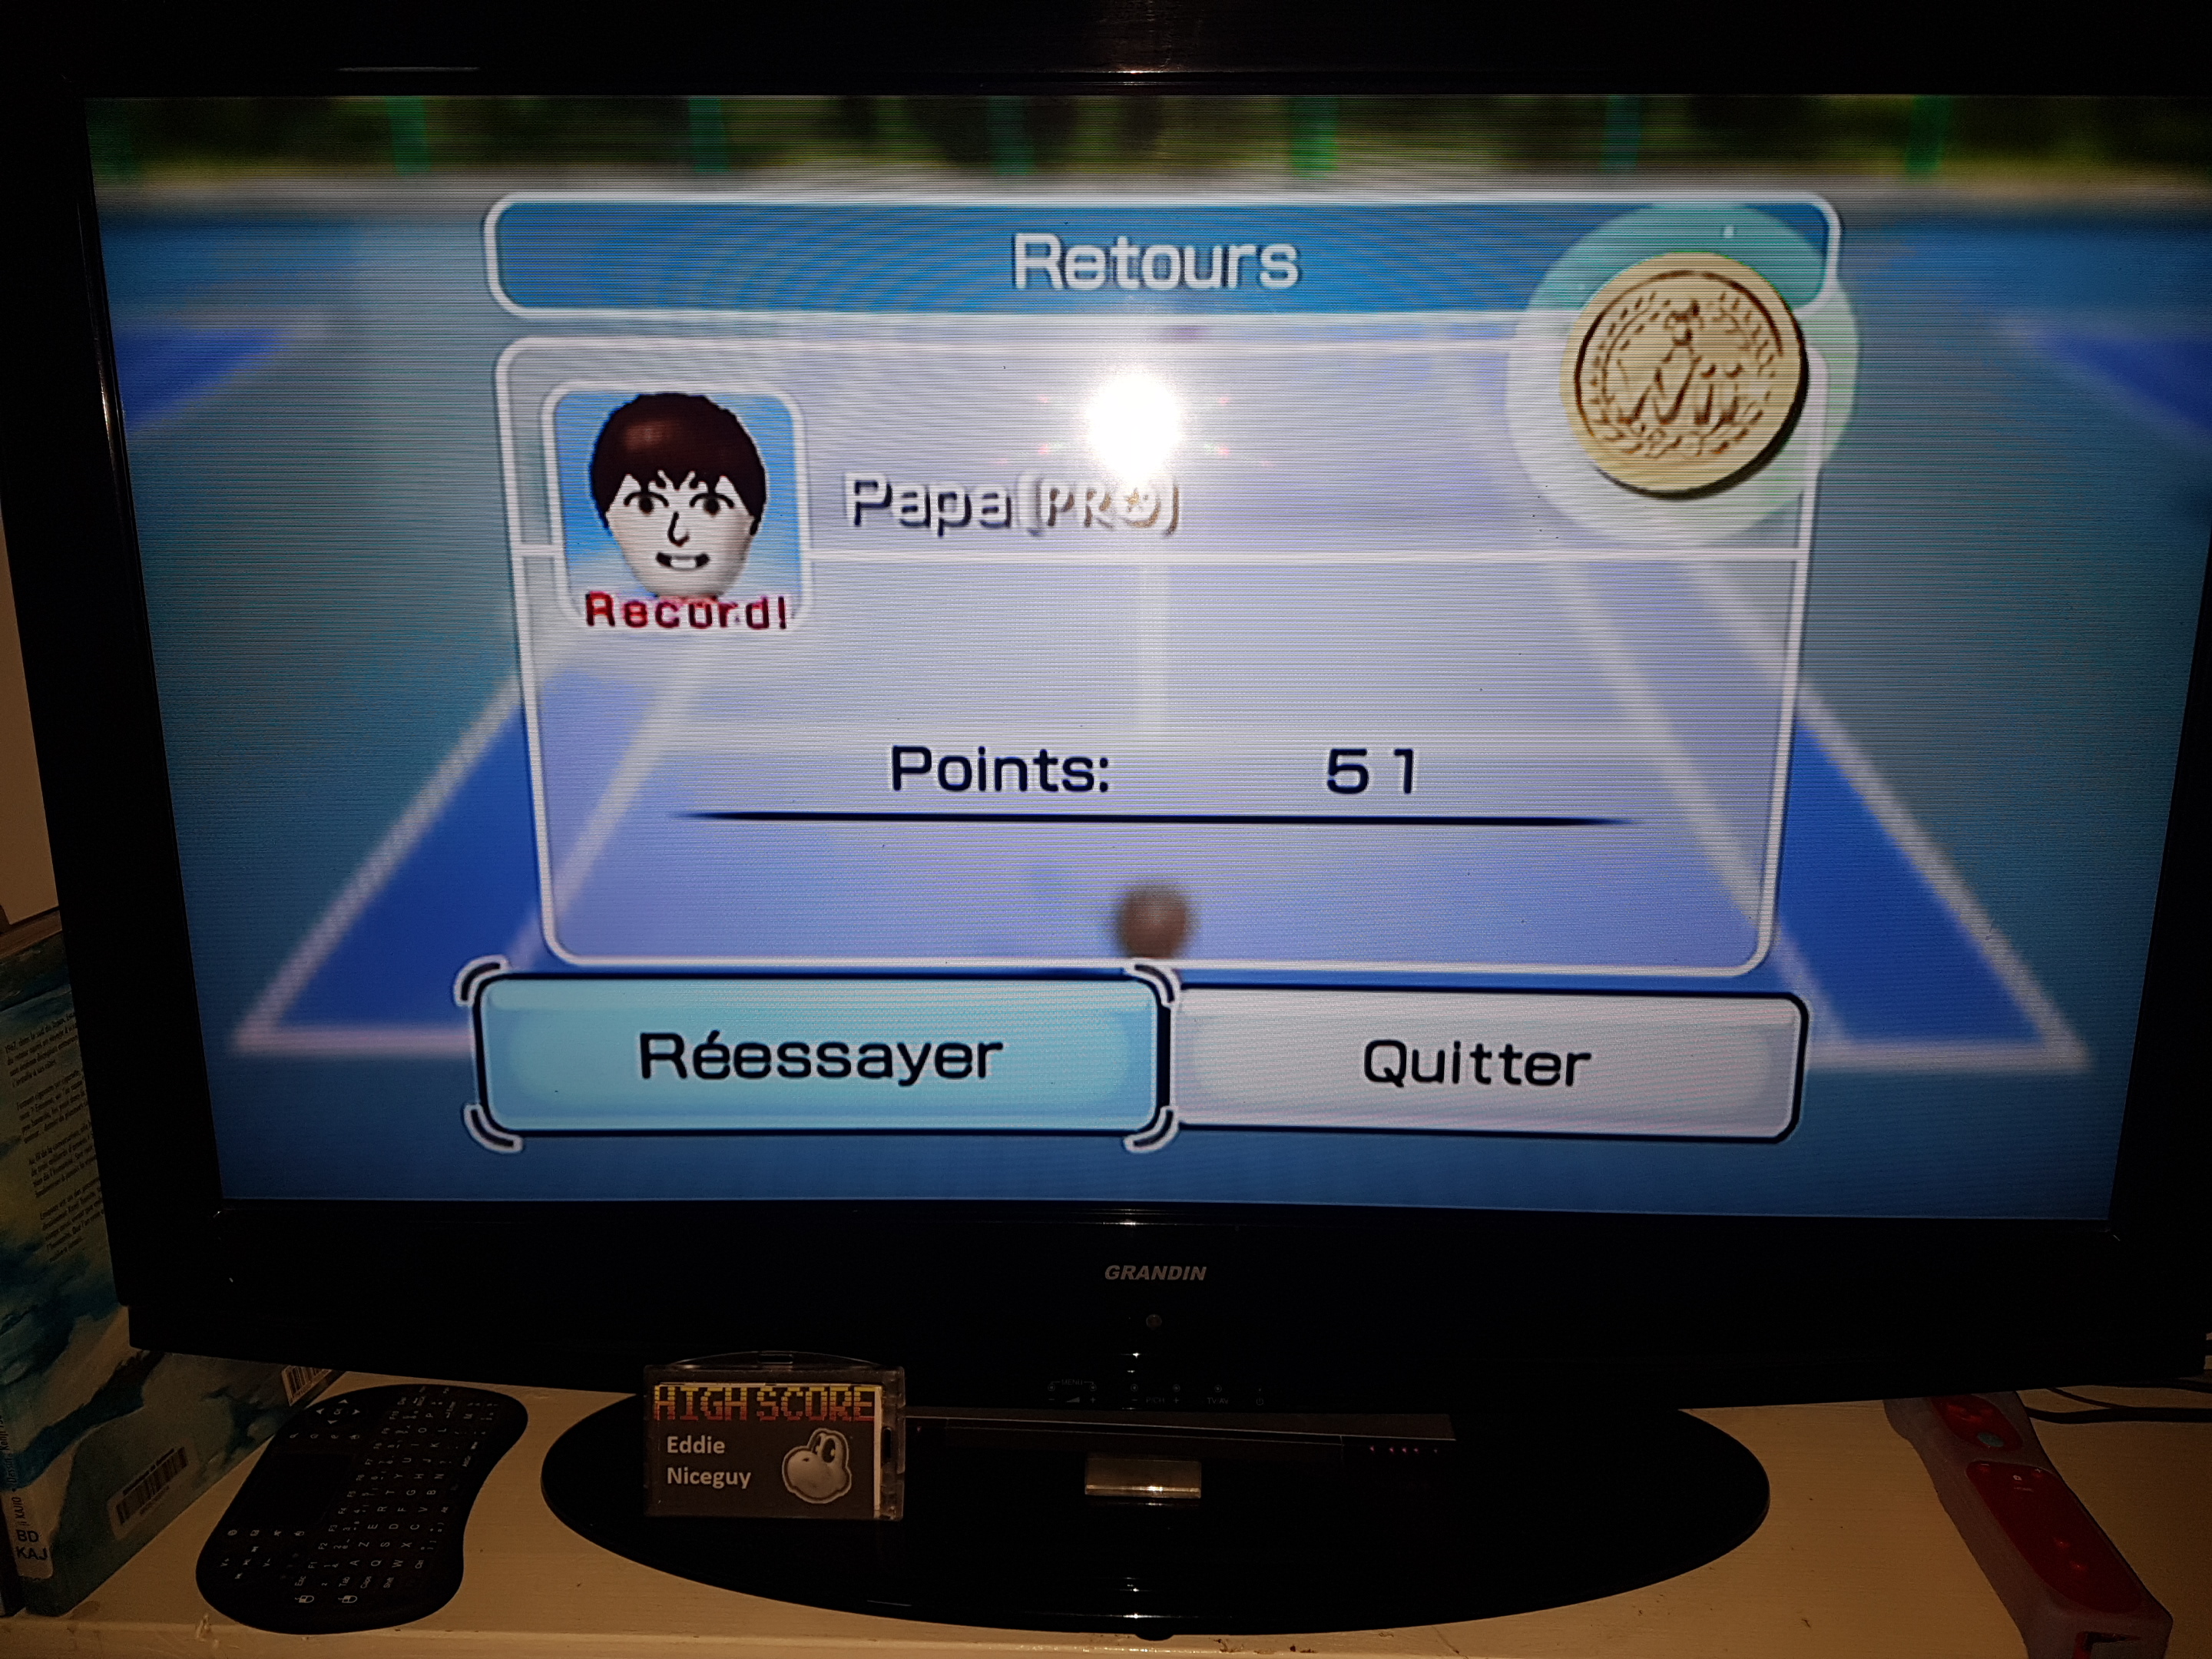 Wii Sports - Tennis - Nintendo Wii - VGDB 